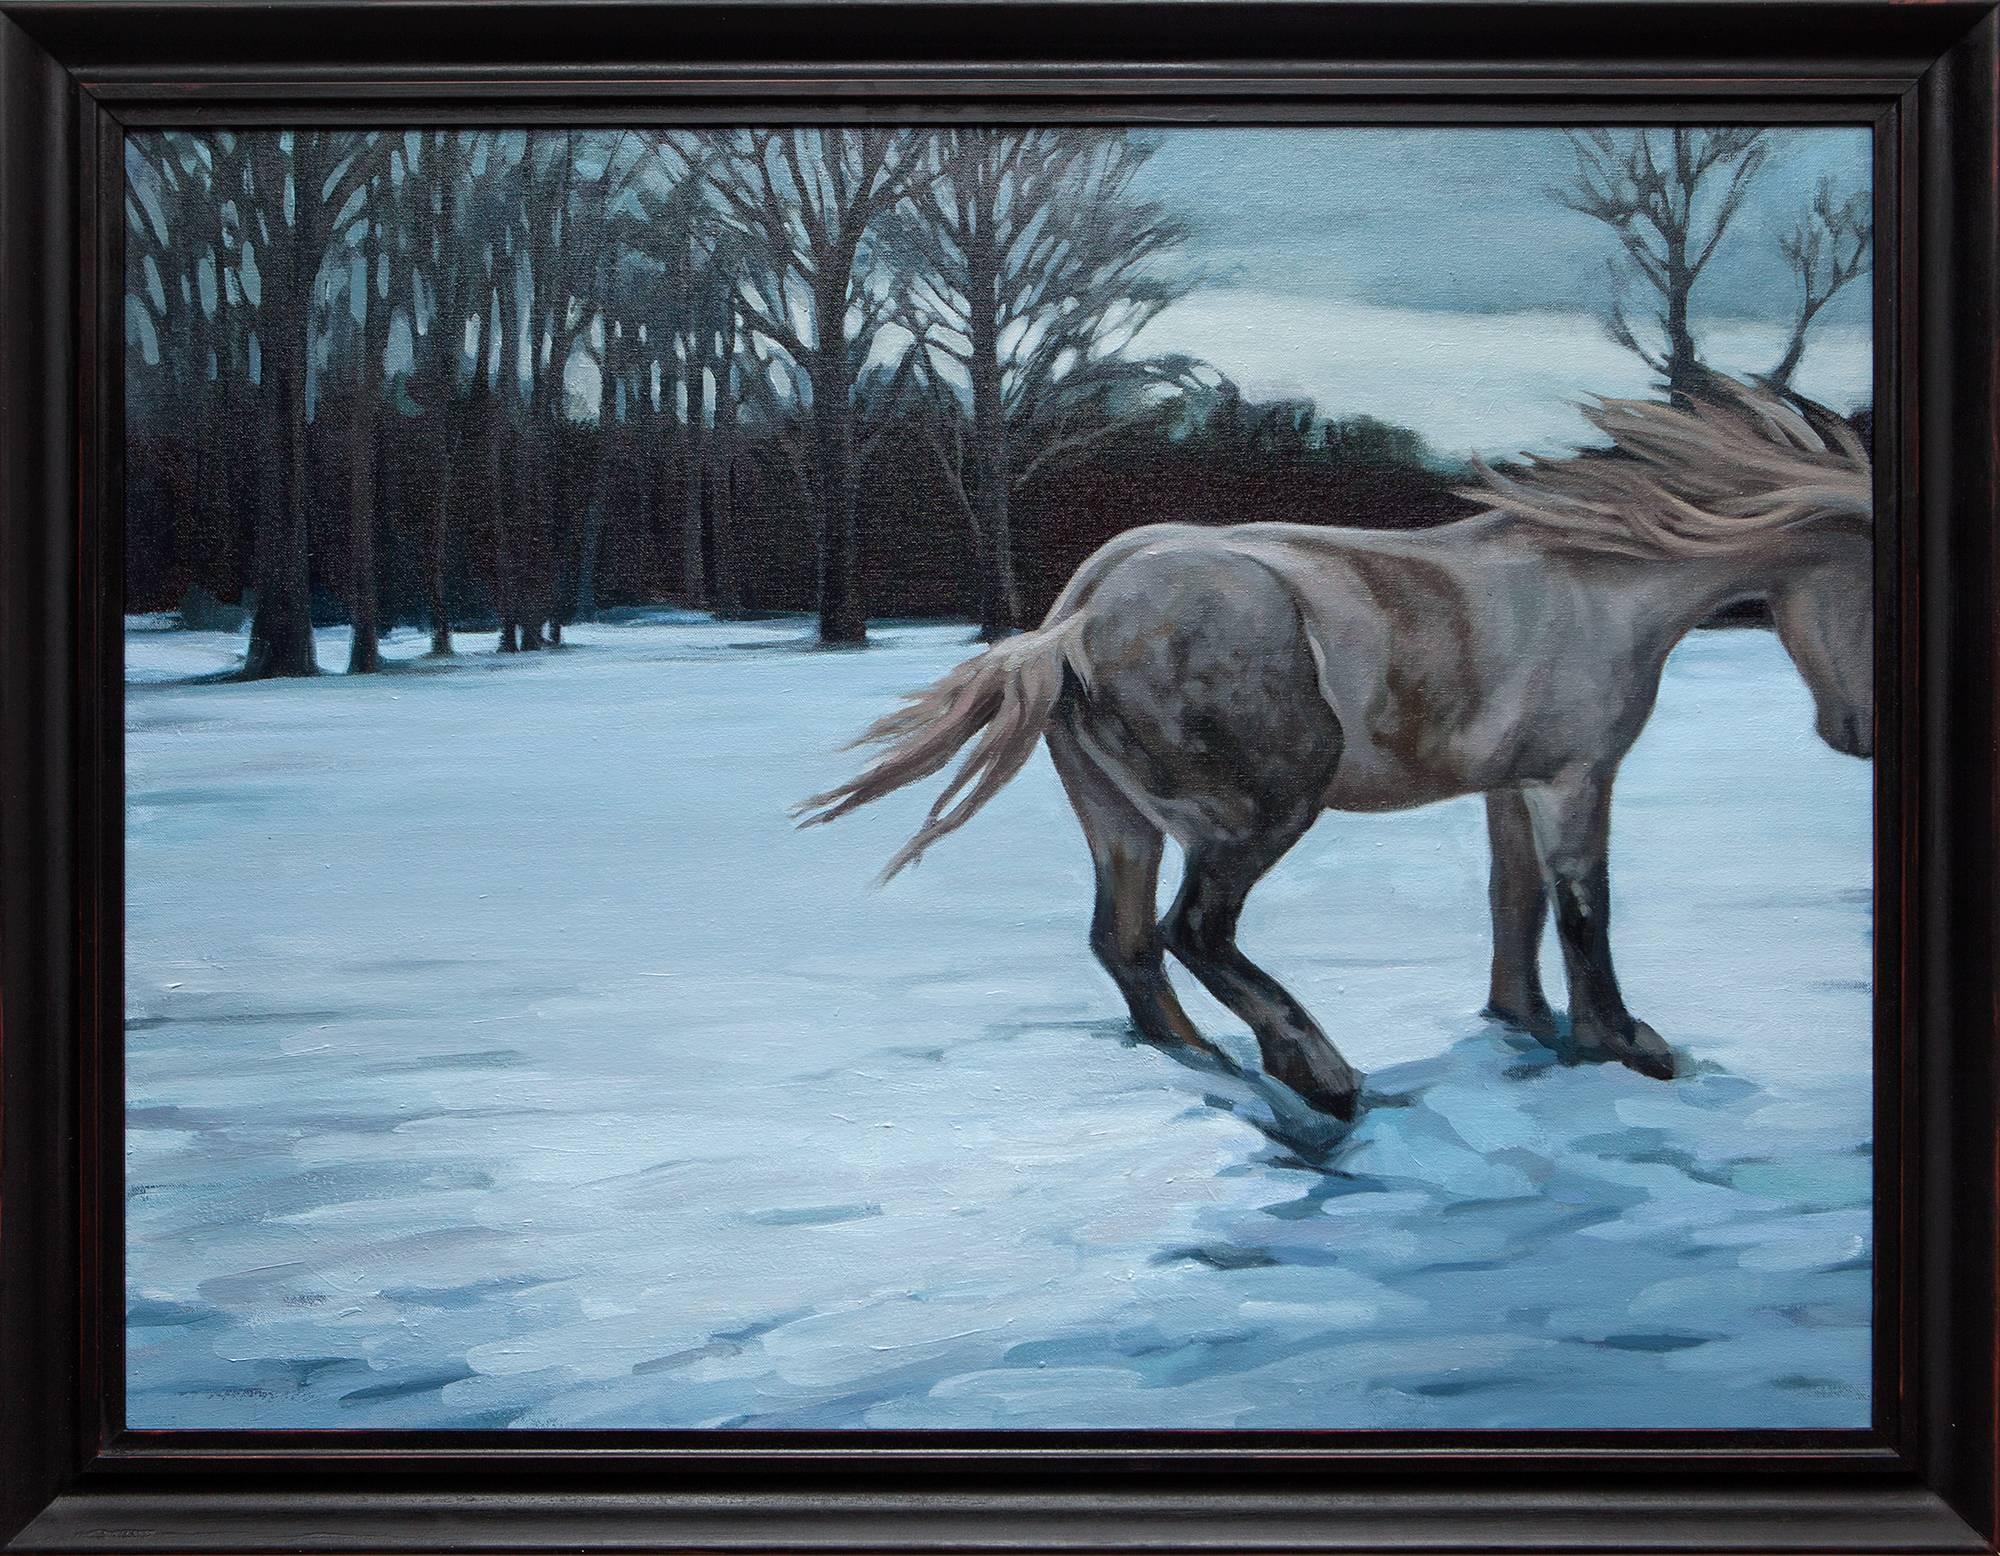 Landscape Painting Katherine Fraser - "Alive and Well", Paysage d'hiver avec peinture à l'huile de cheval, scène de neige